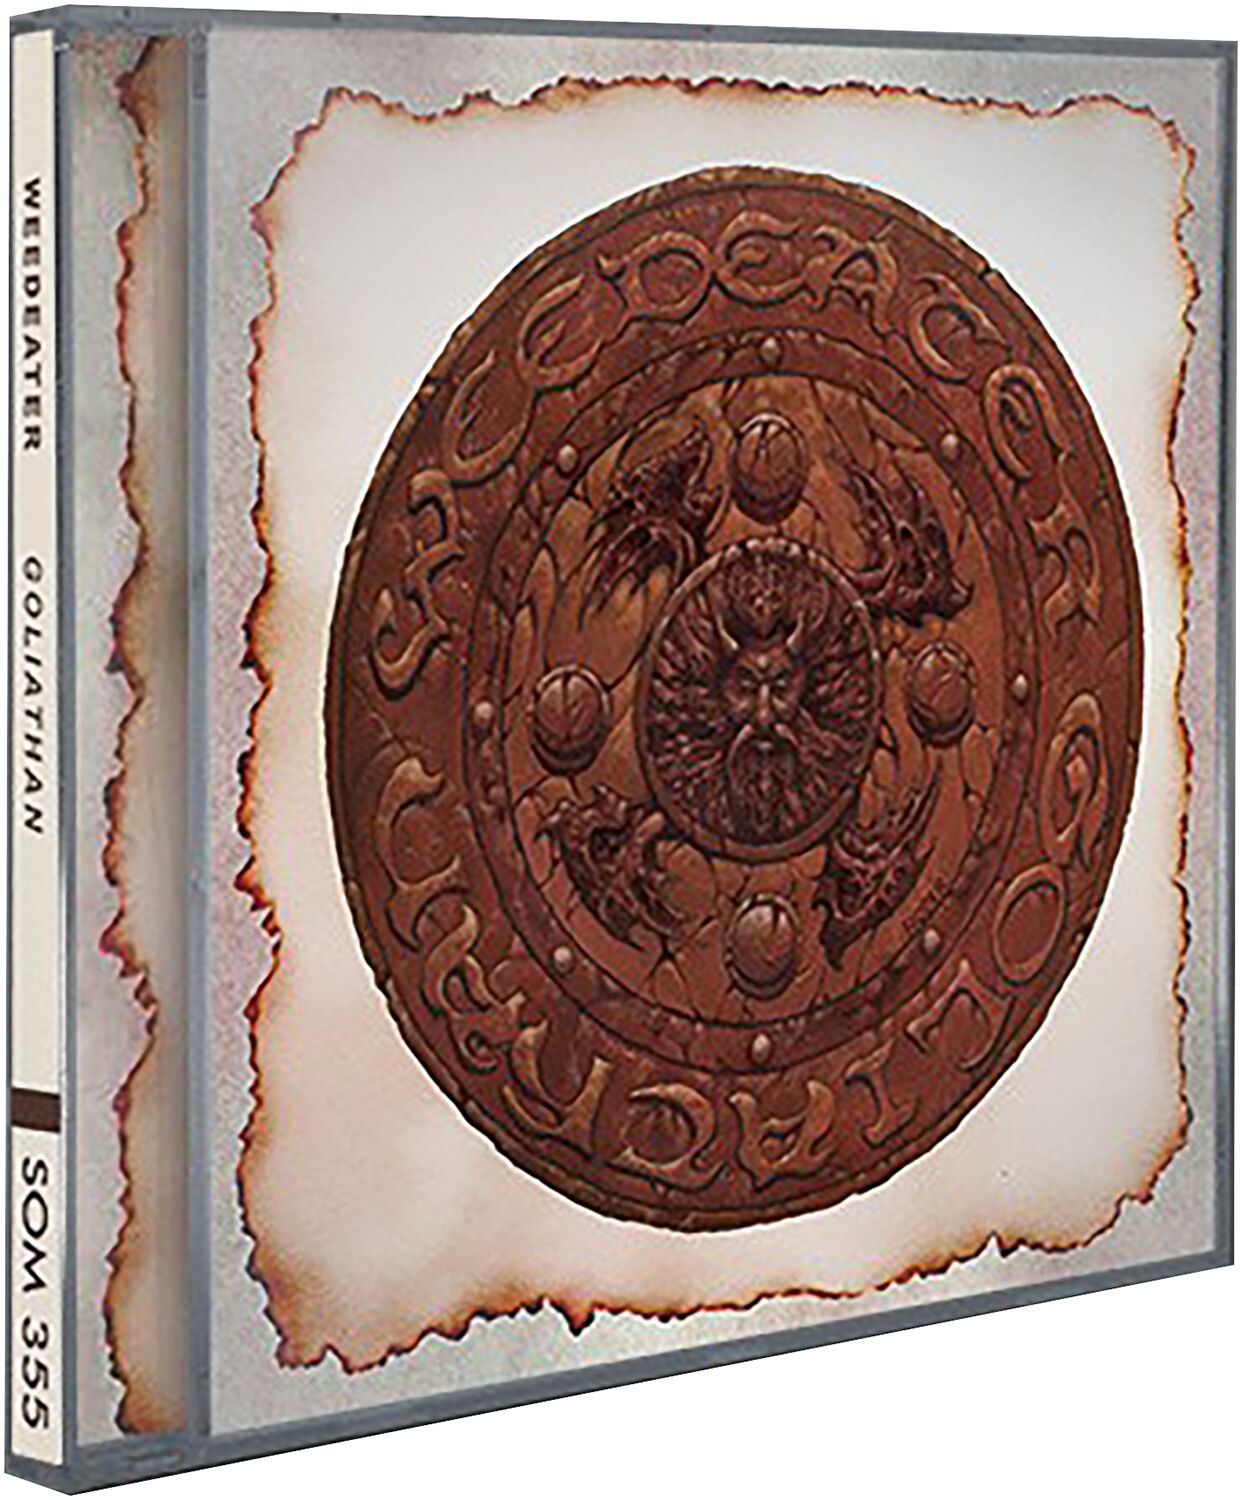 Goliathan von Weedeater - CD (Jewelcase)